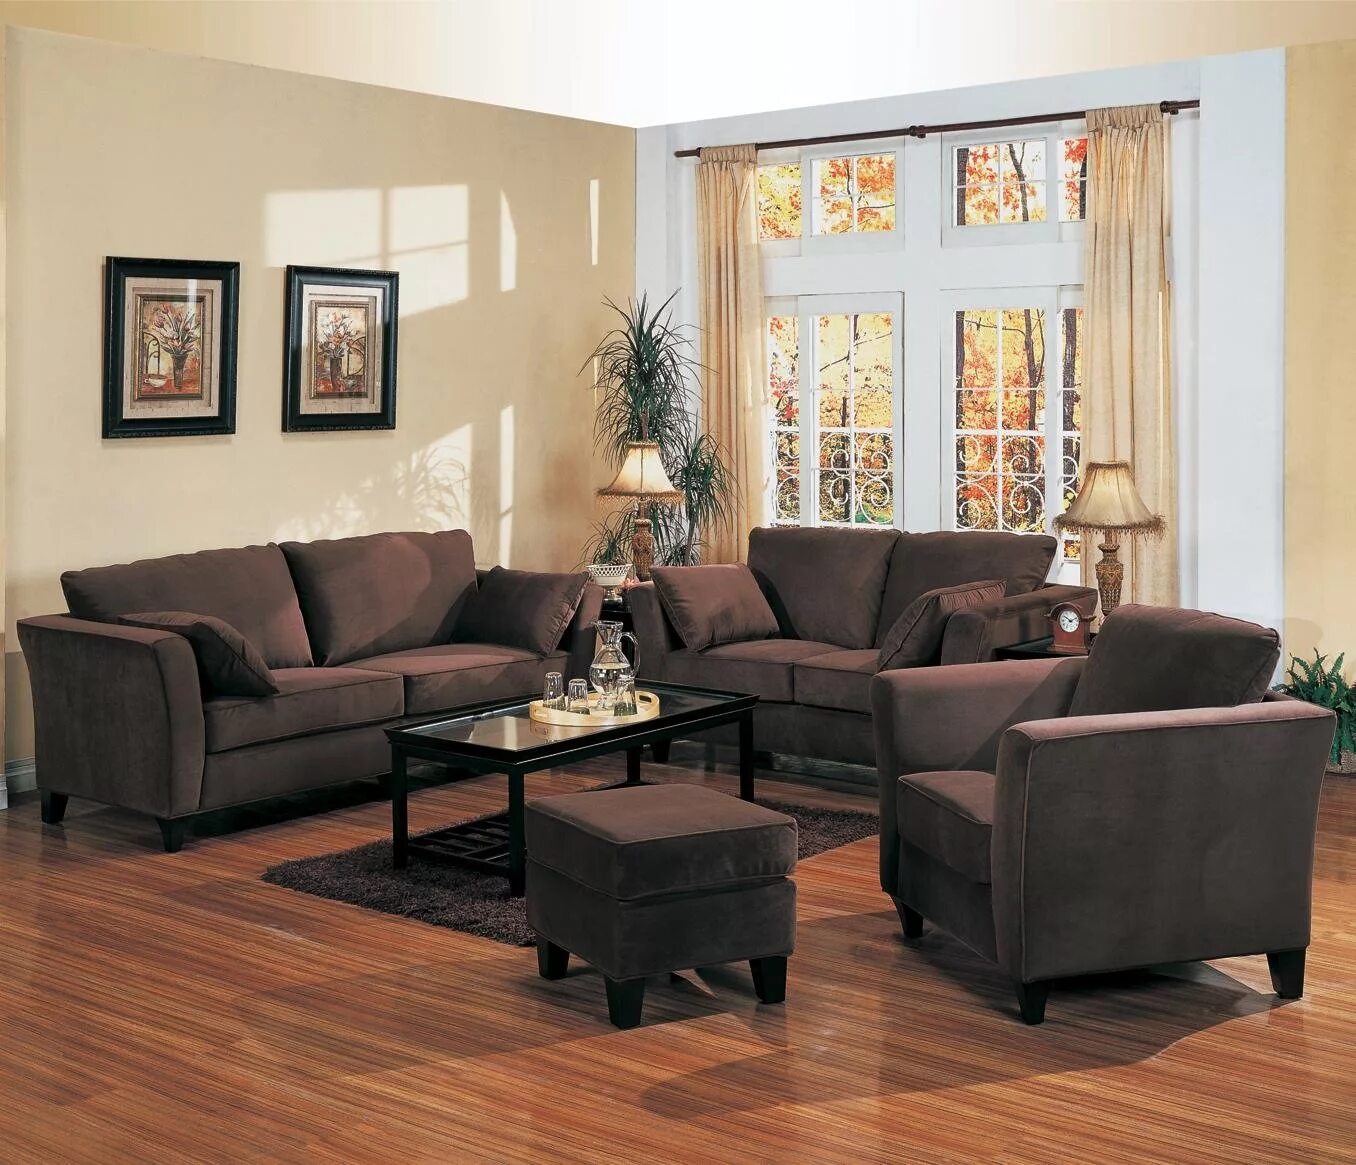 Обои коричневому дивану. Коричневая мебель в интерьере. Шоколадный диван в интерьере. Мягкая мебель в интерьере. Диван коричневого цвета в интерьере.